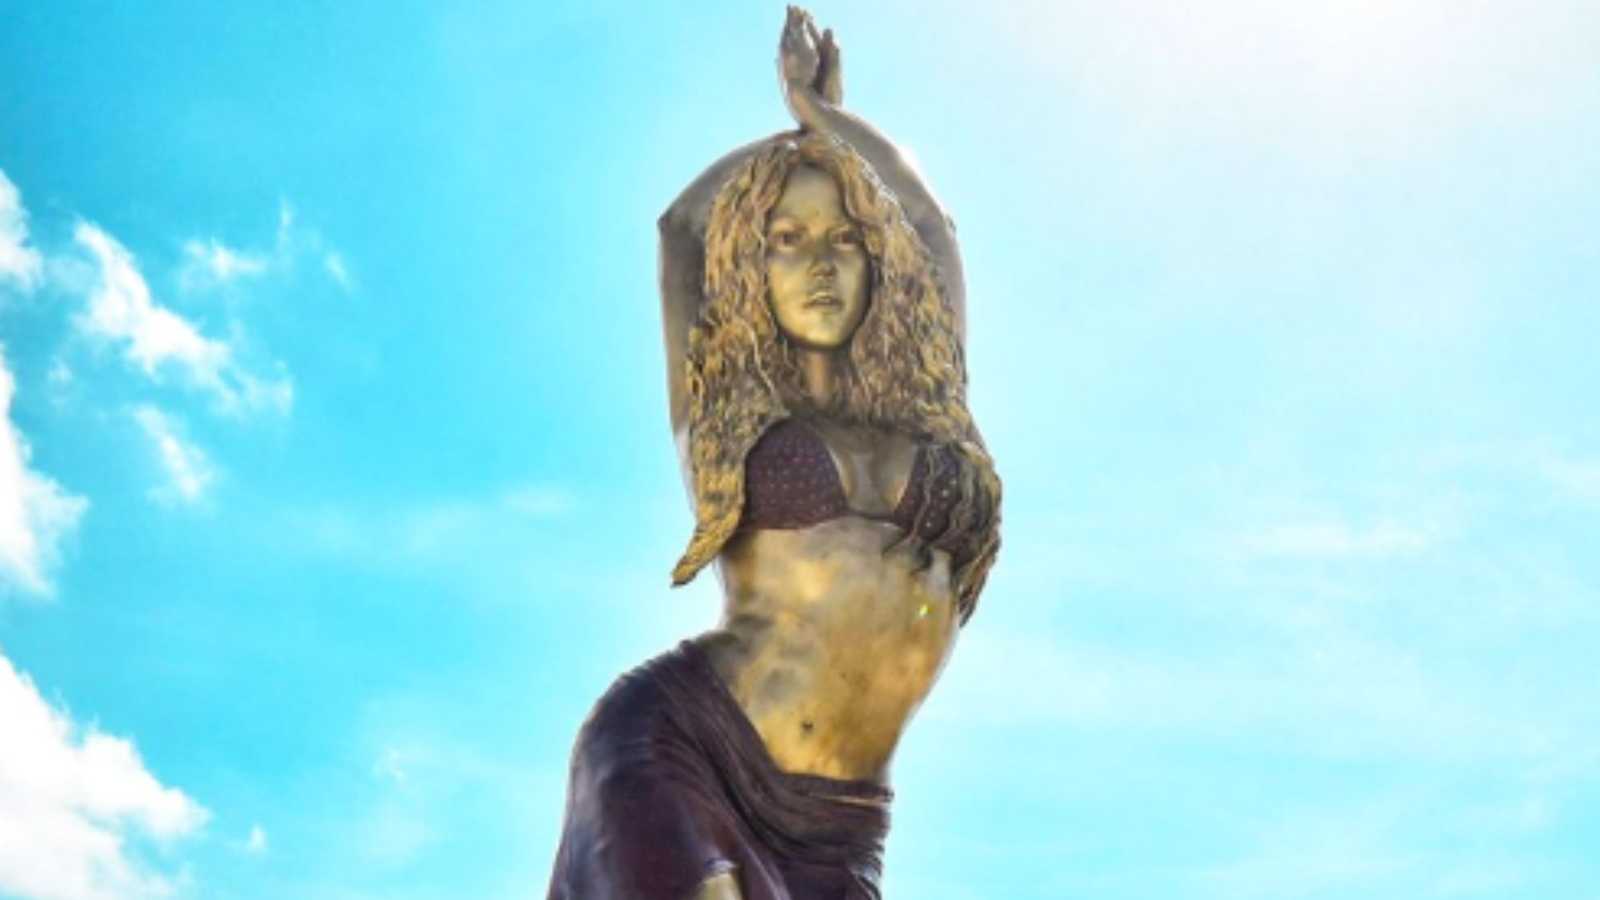 Shakira statue